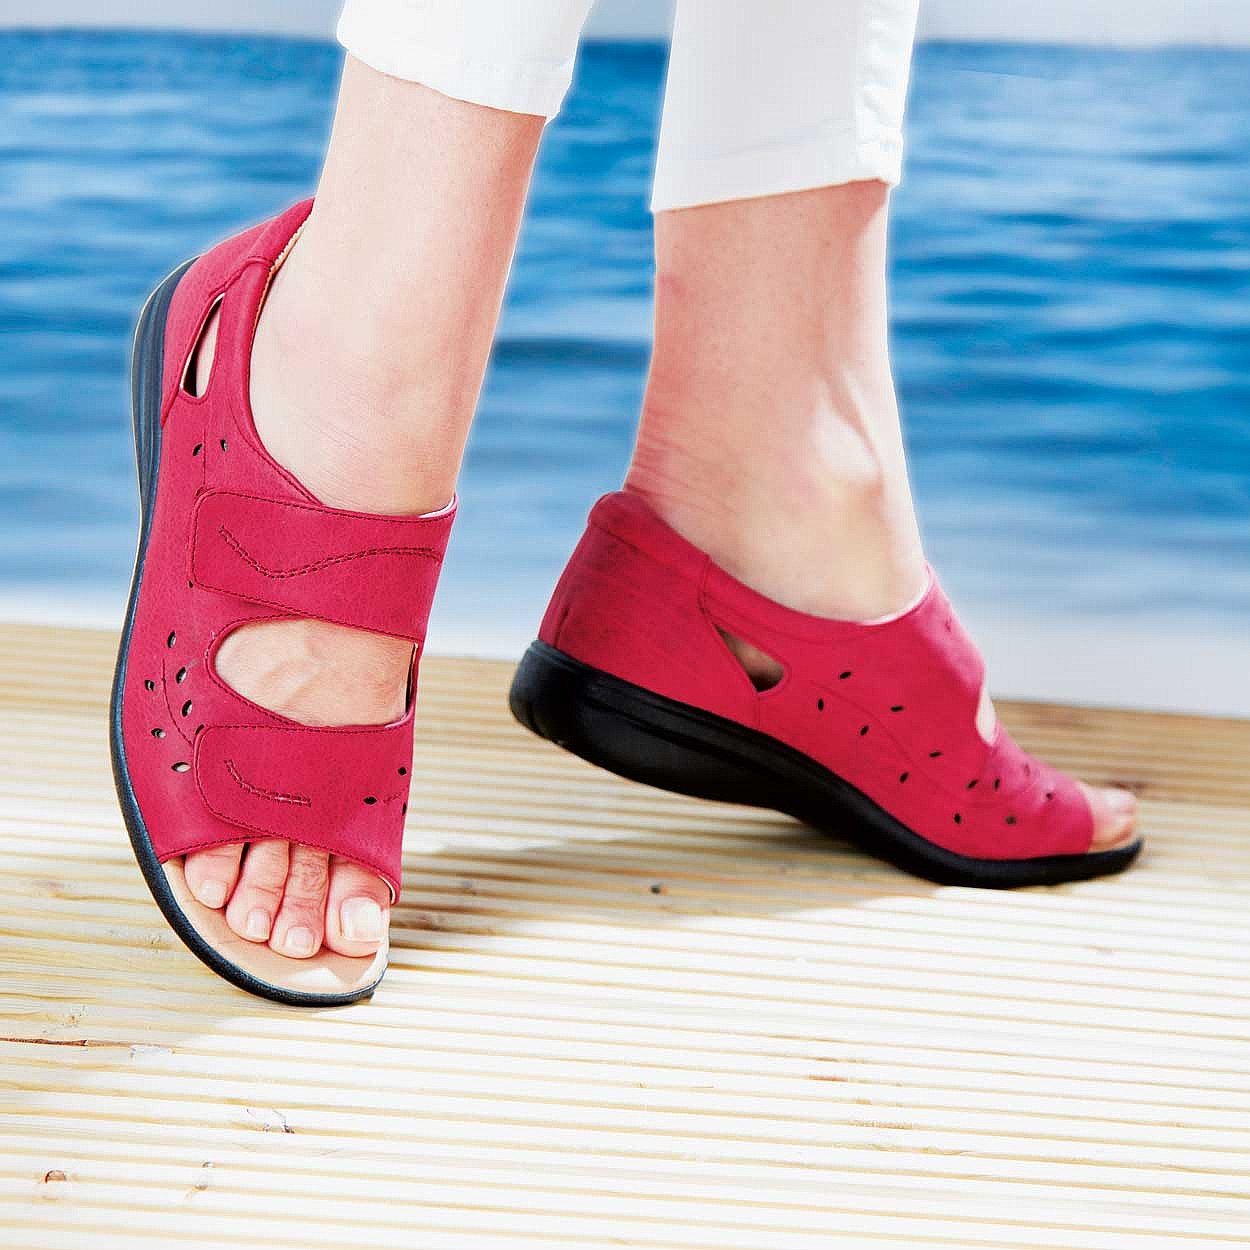 buy summer sandals